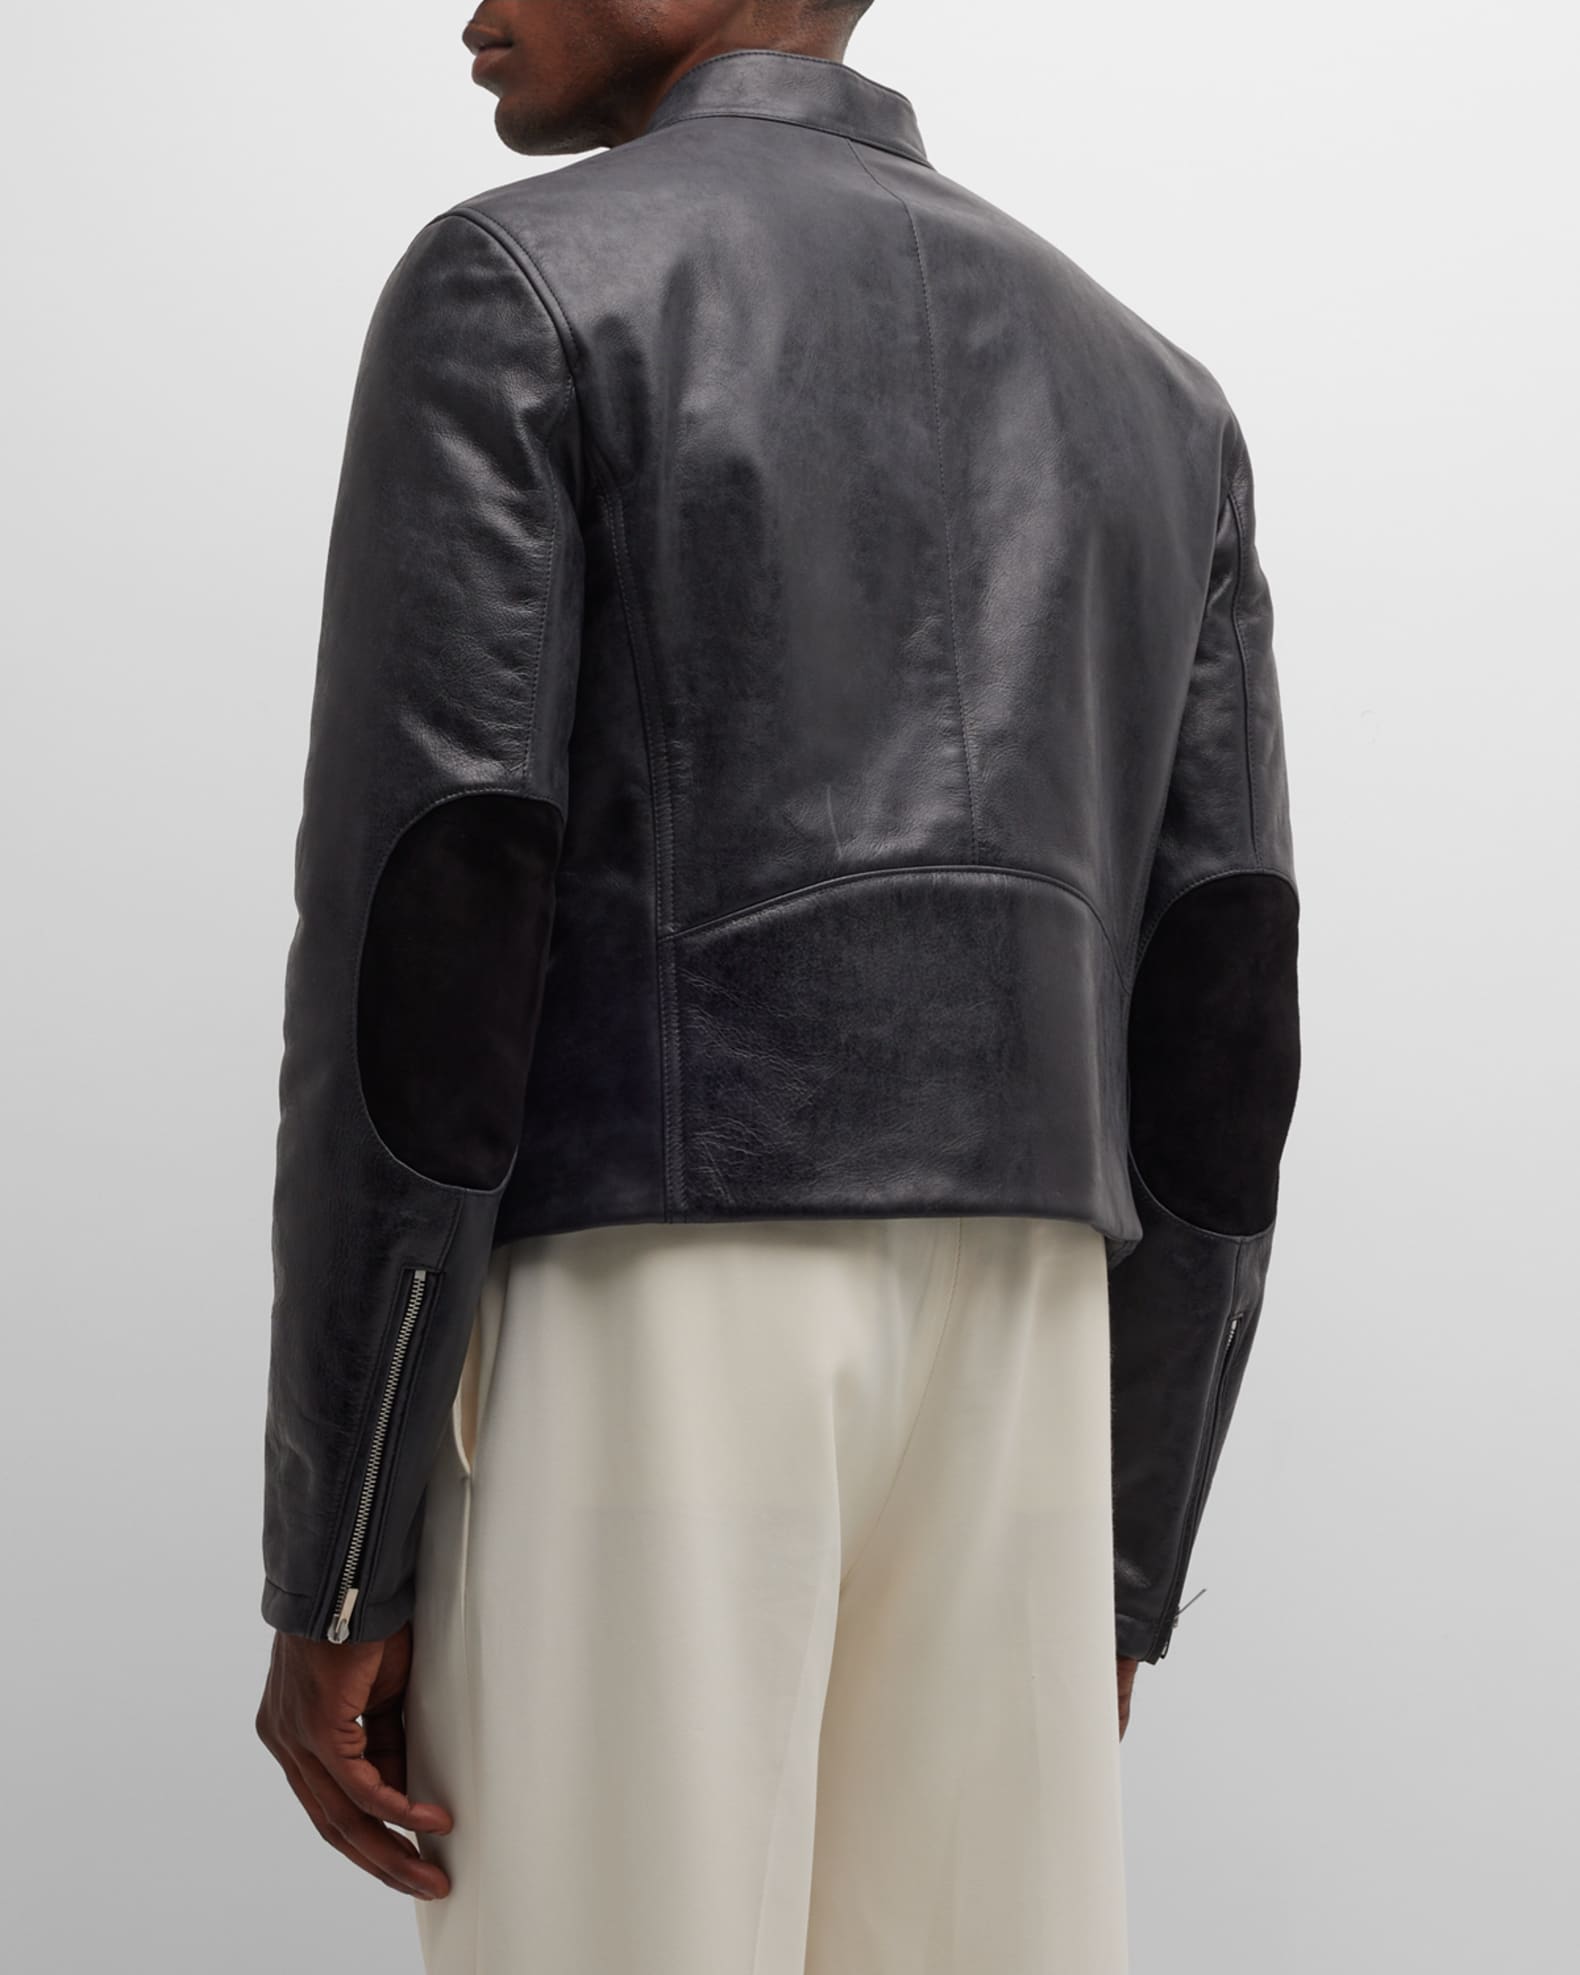 Ferragamo Men's Leather Moto Jacket | Neiman Marcus